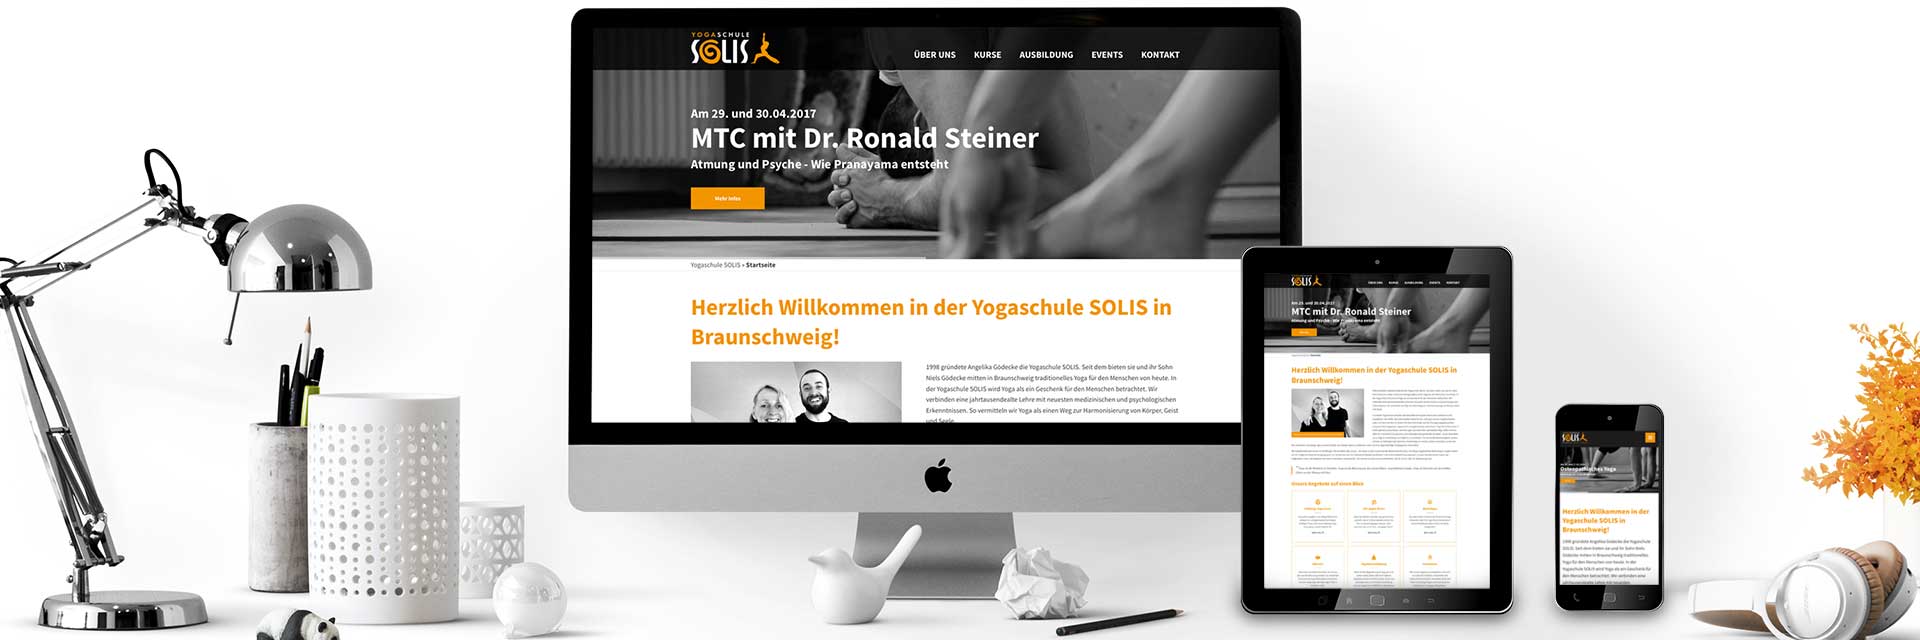 Webdesign für die Yogaschule SOLIS in Braunschweig